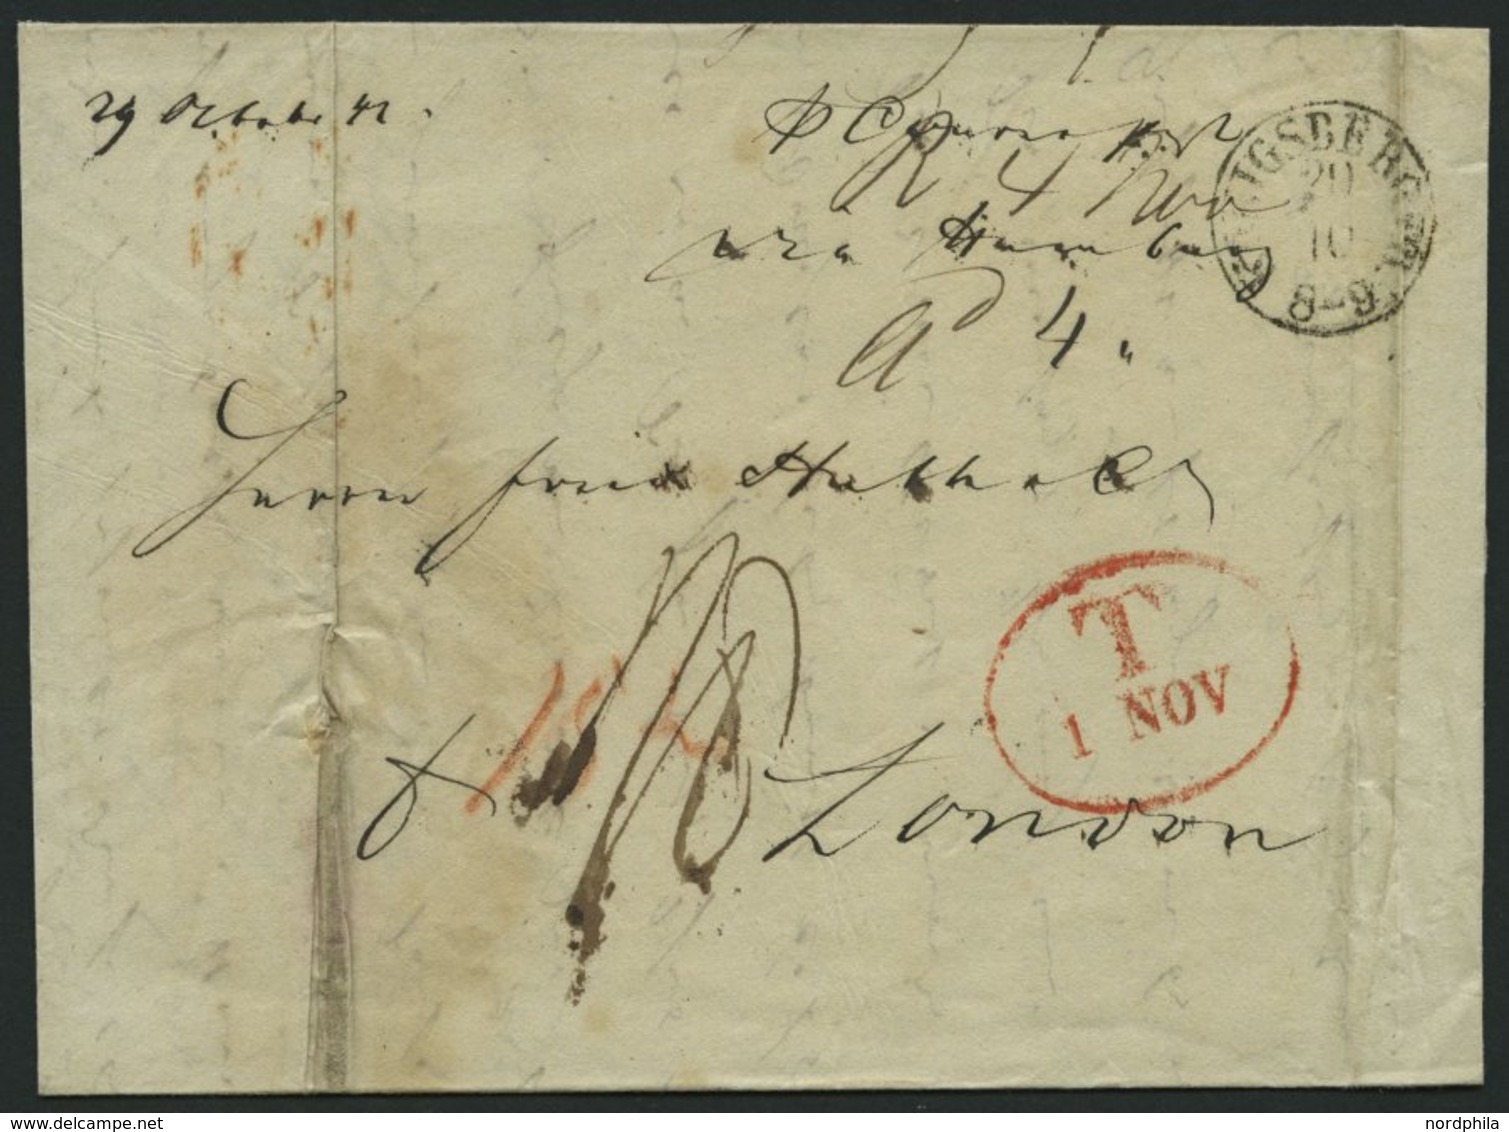 HAMBURG 1842, T 1 NOV, Rote Sonderform Auf Brief Von Königsberg (K1) Nach London, Feinst (Reg.-büge) - Préphilatélie